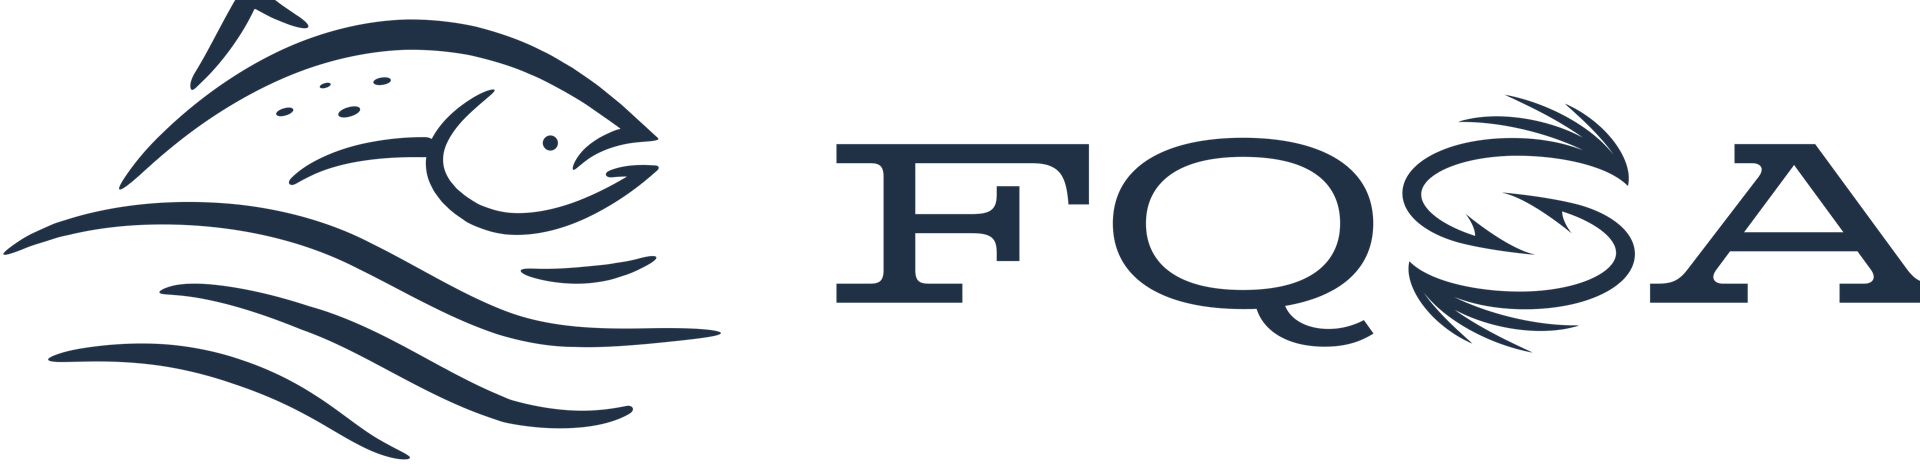 FQSA logo